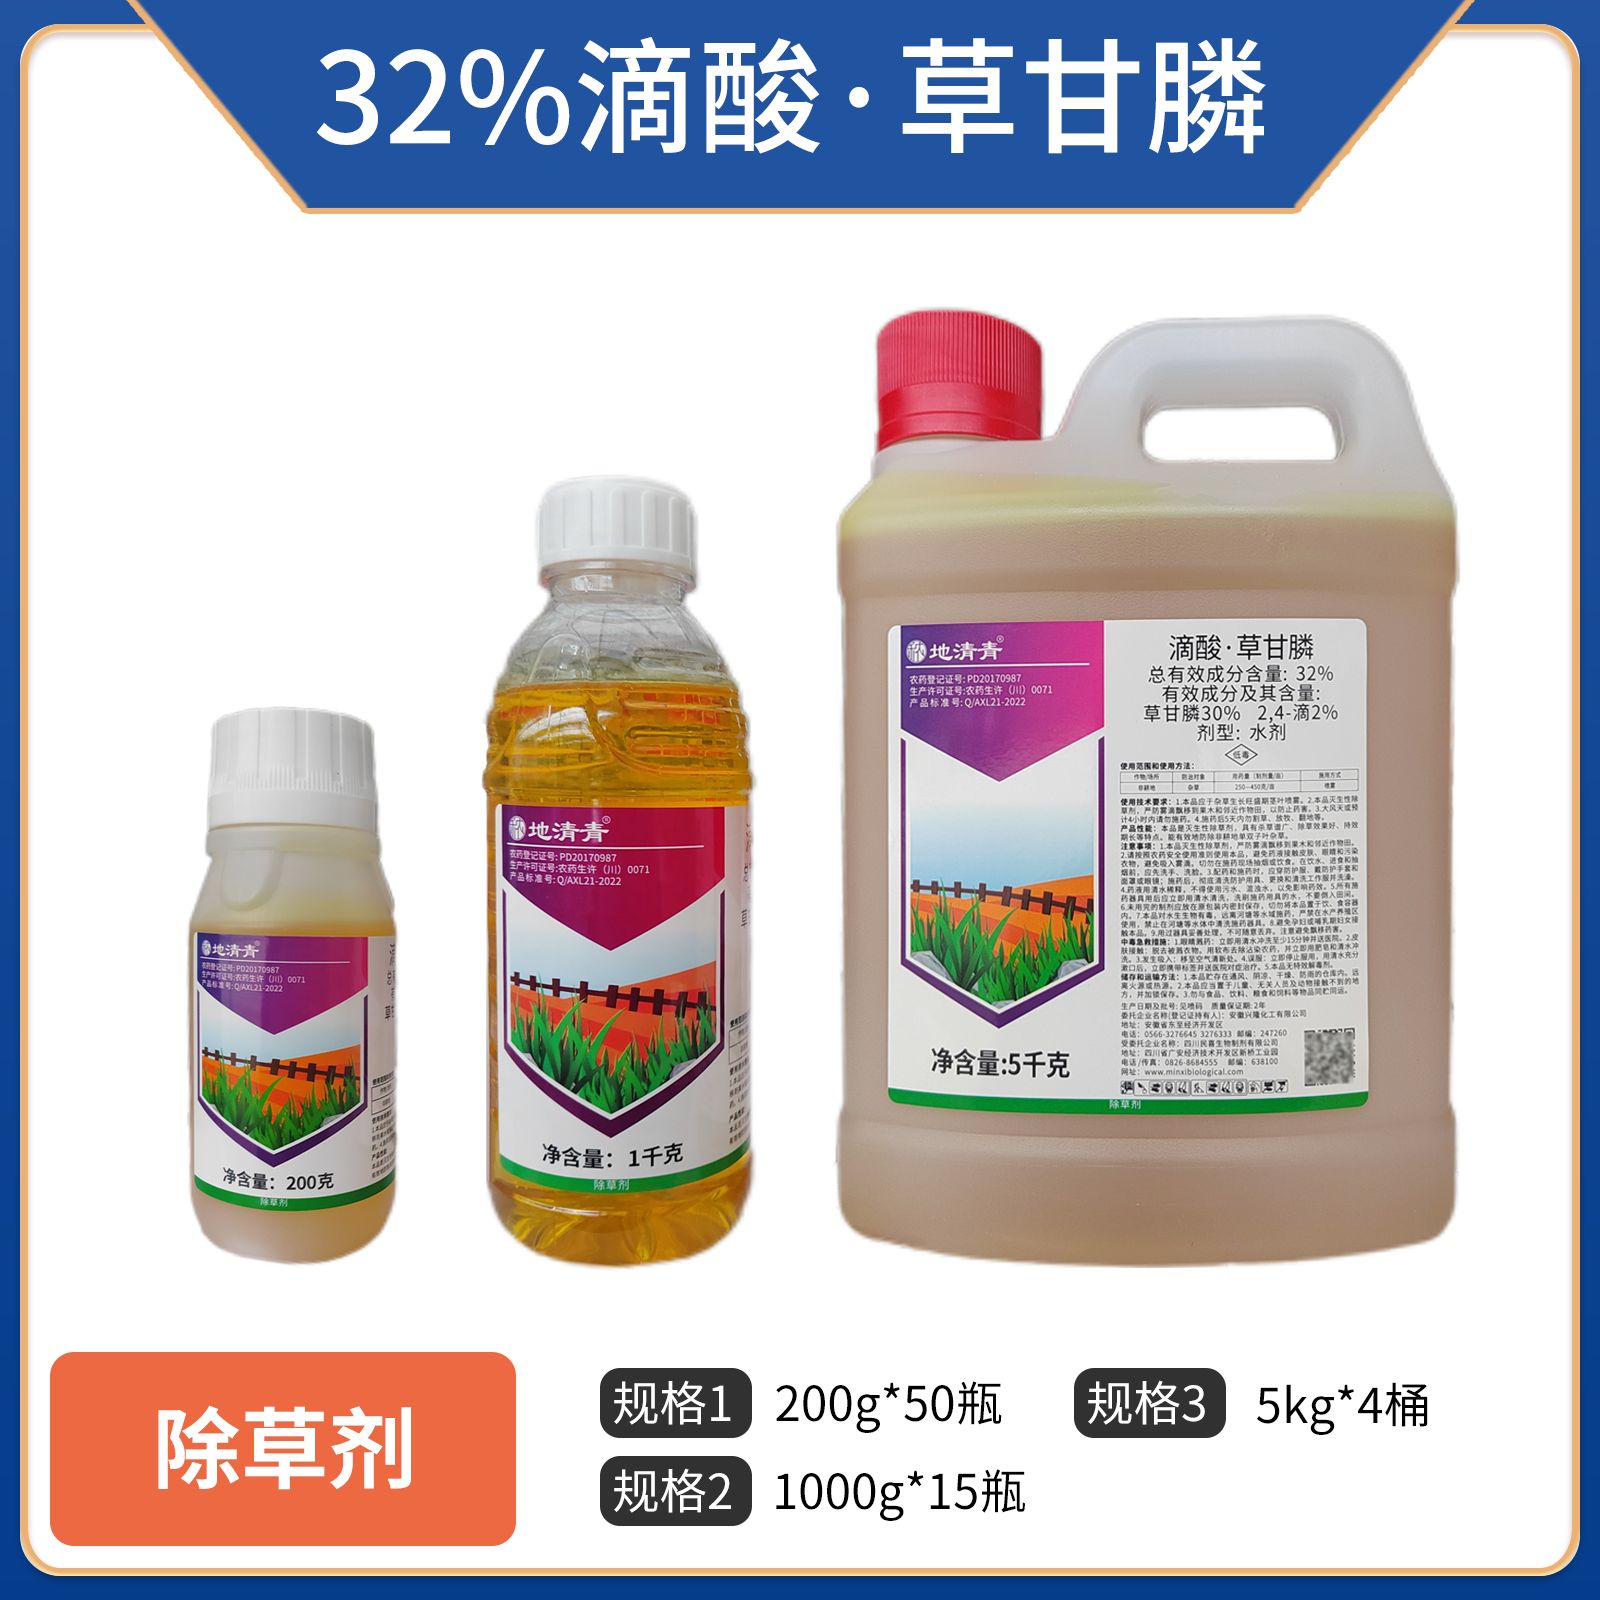 地清青-32%滴酸·草甘膦水剂